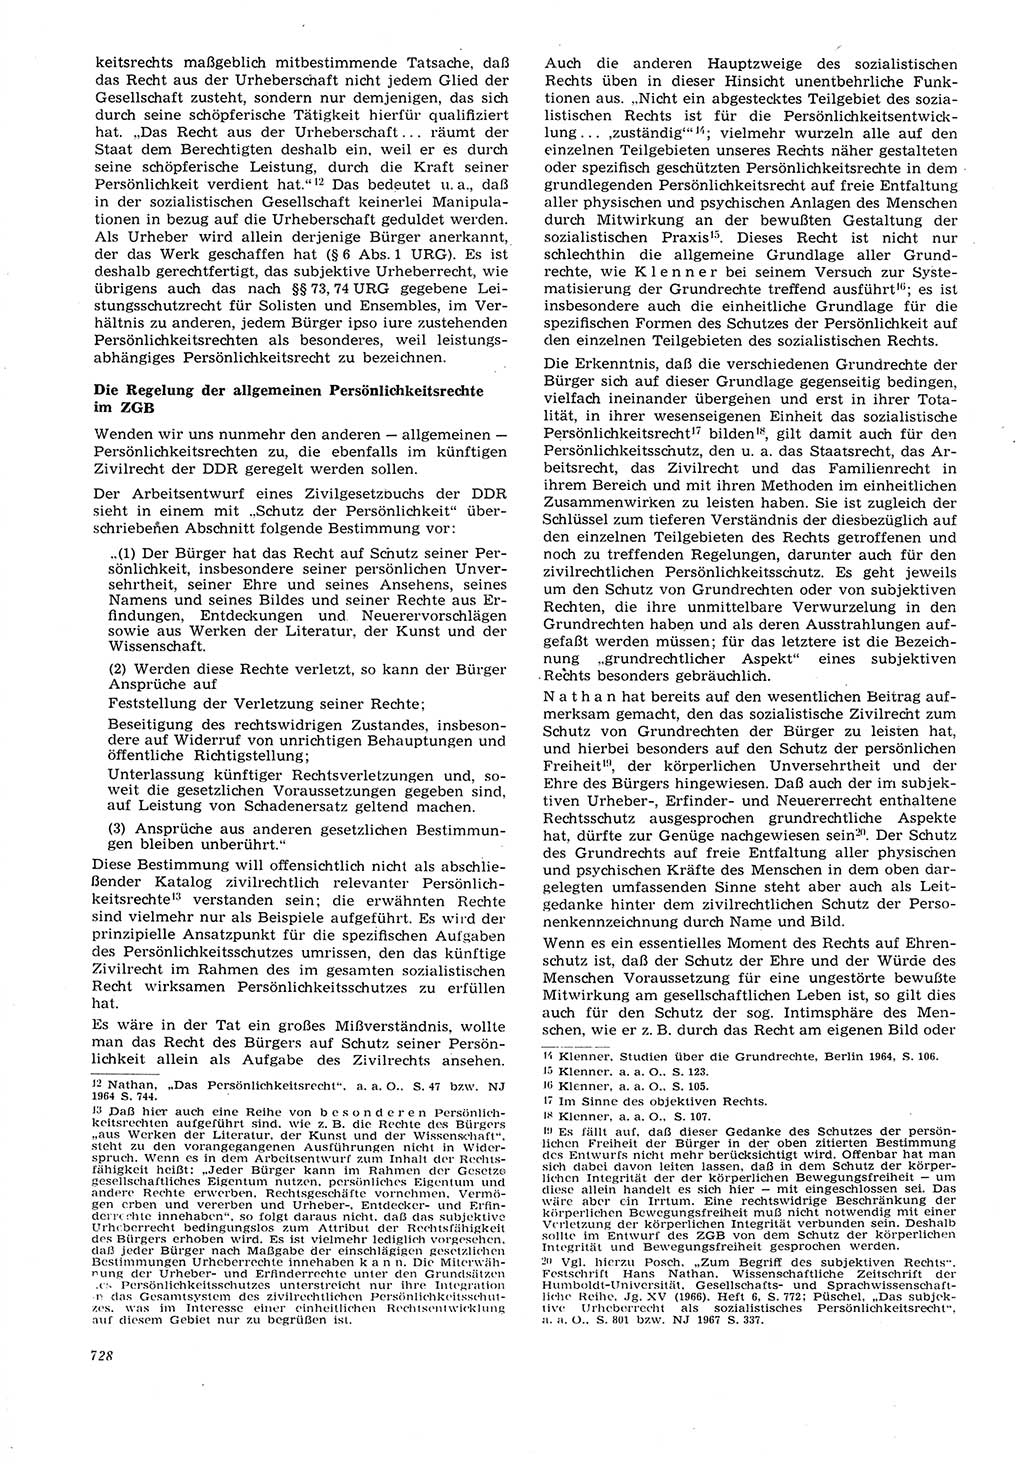 Neue Justiz (NJ), Zeitschrift für Recht und Rechtswissenschaft [Deutsche Demokratische Republik (DDR)], 21. Jahrgang 1967, Seite 728 (NJ DDR 1967, S. 728)